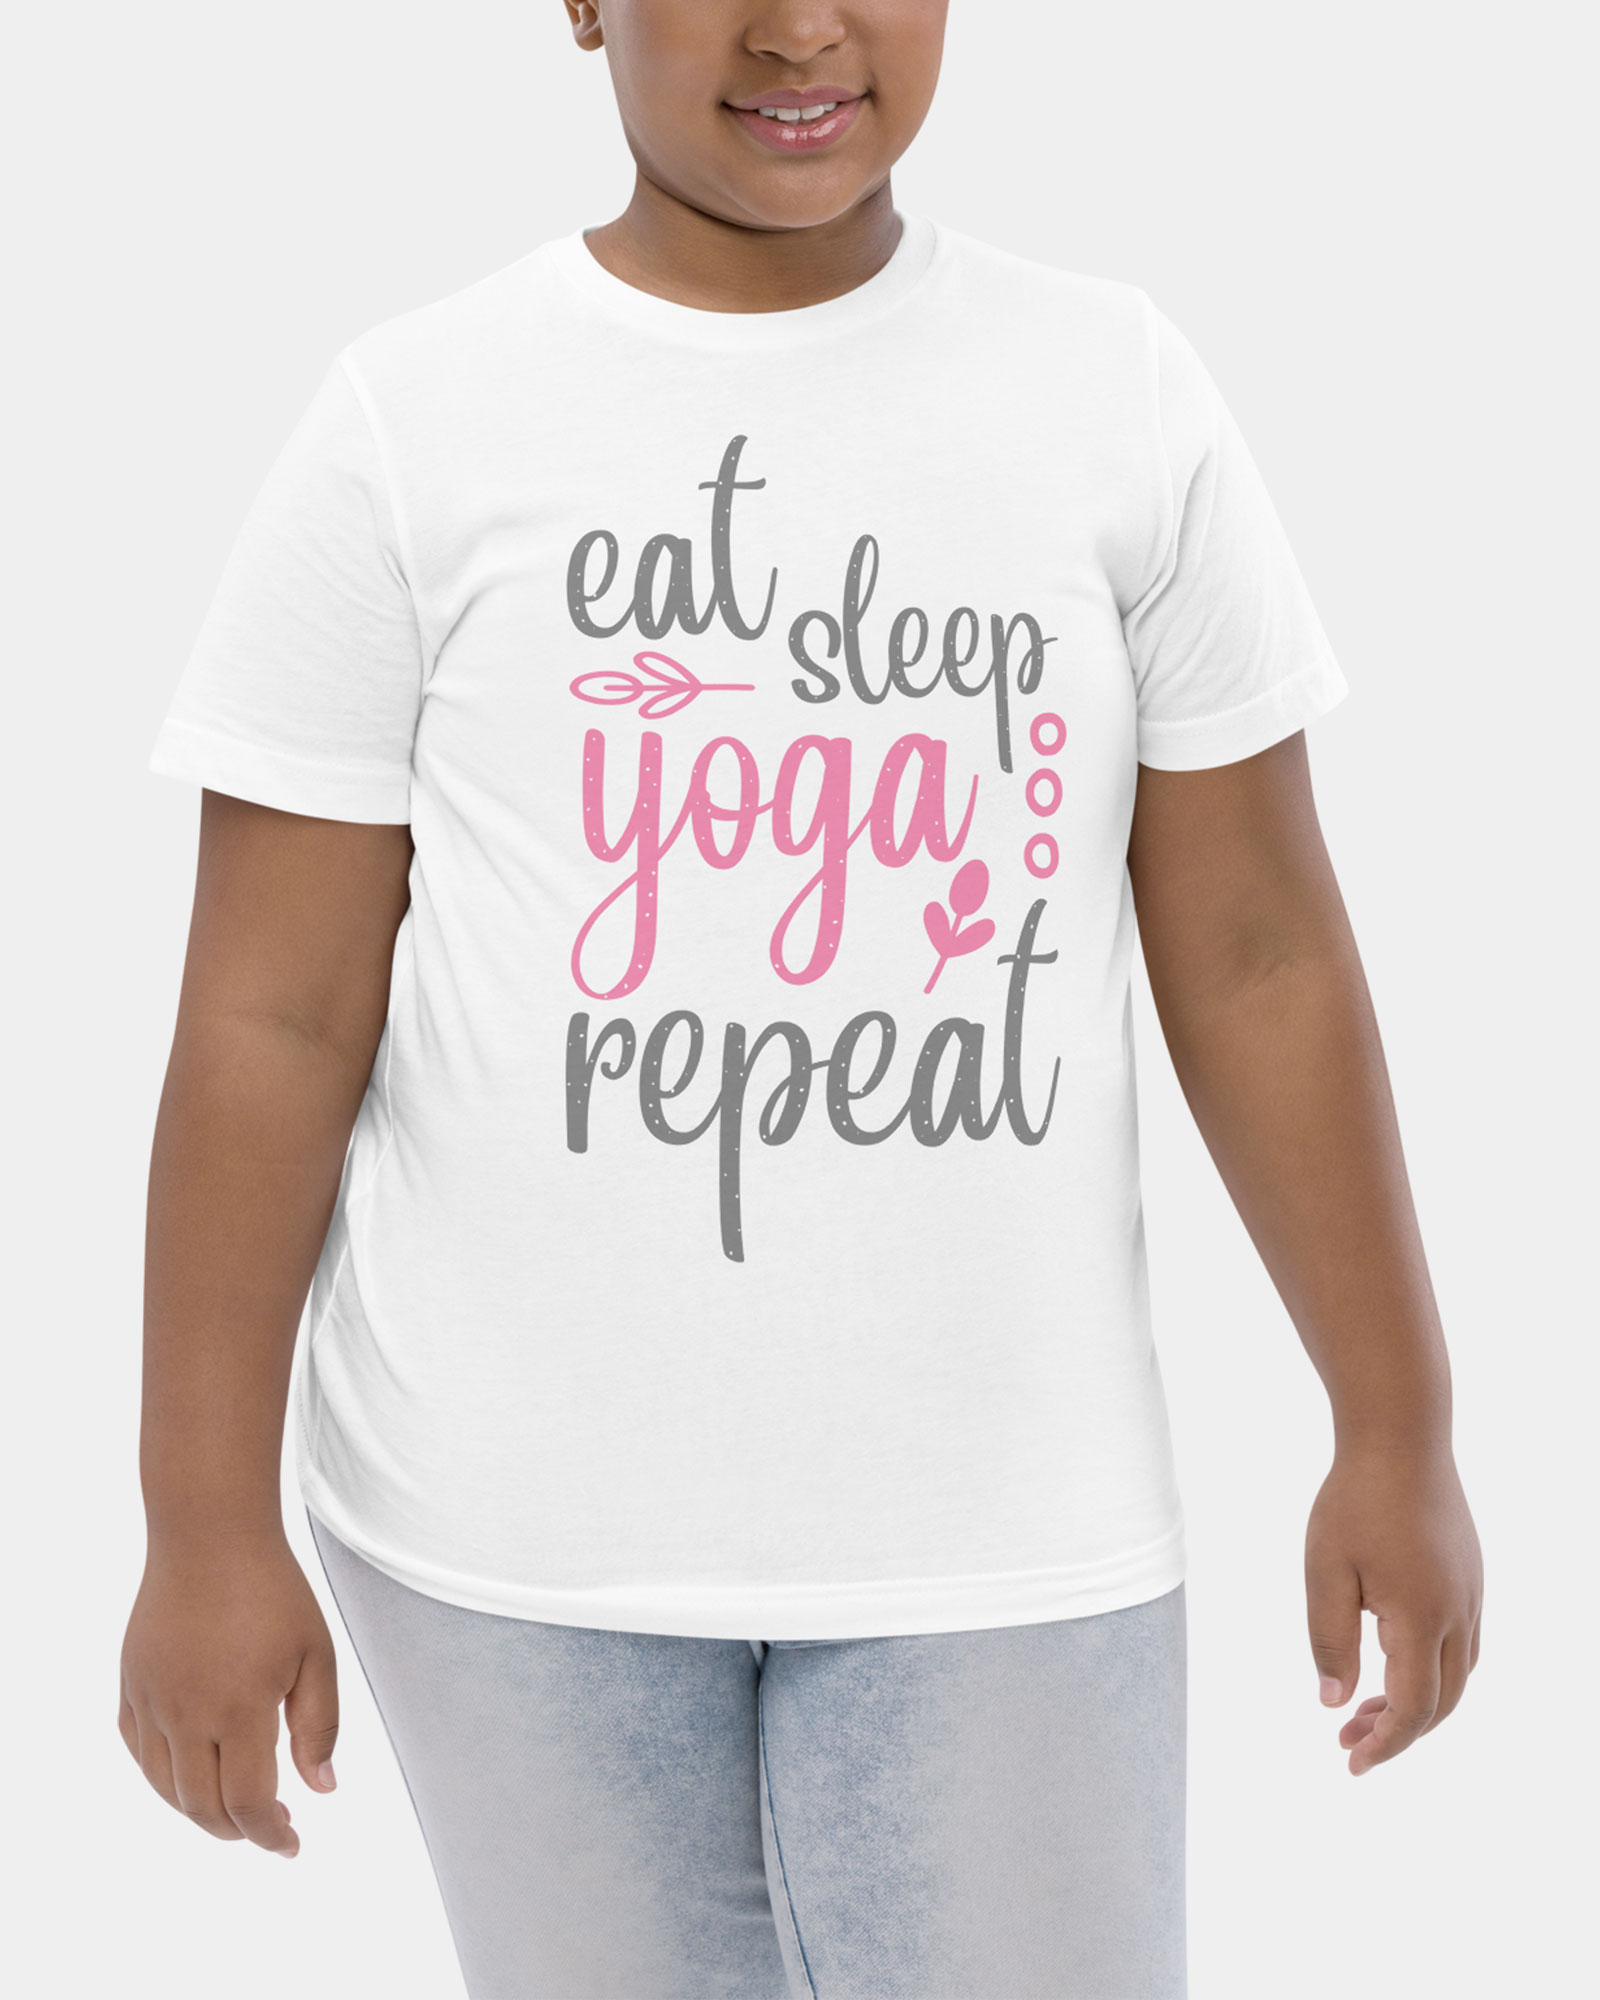 Eat Sleep Yoga Repeat tshirt